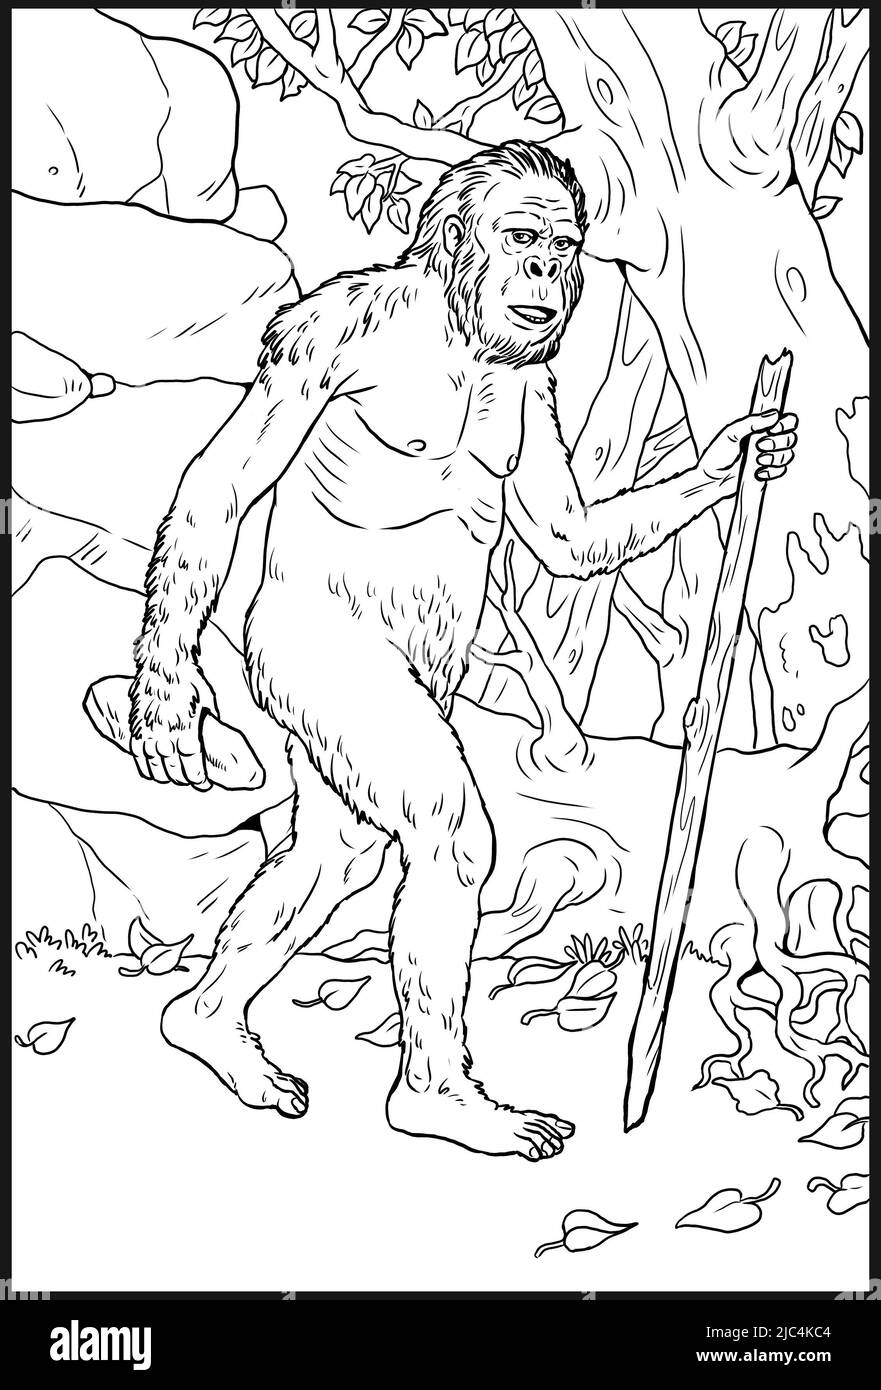 Primates préhistoriques australopithecus. Ancêtres des humains pour le livre de coloriage. Banque D'Images